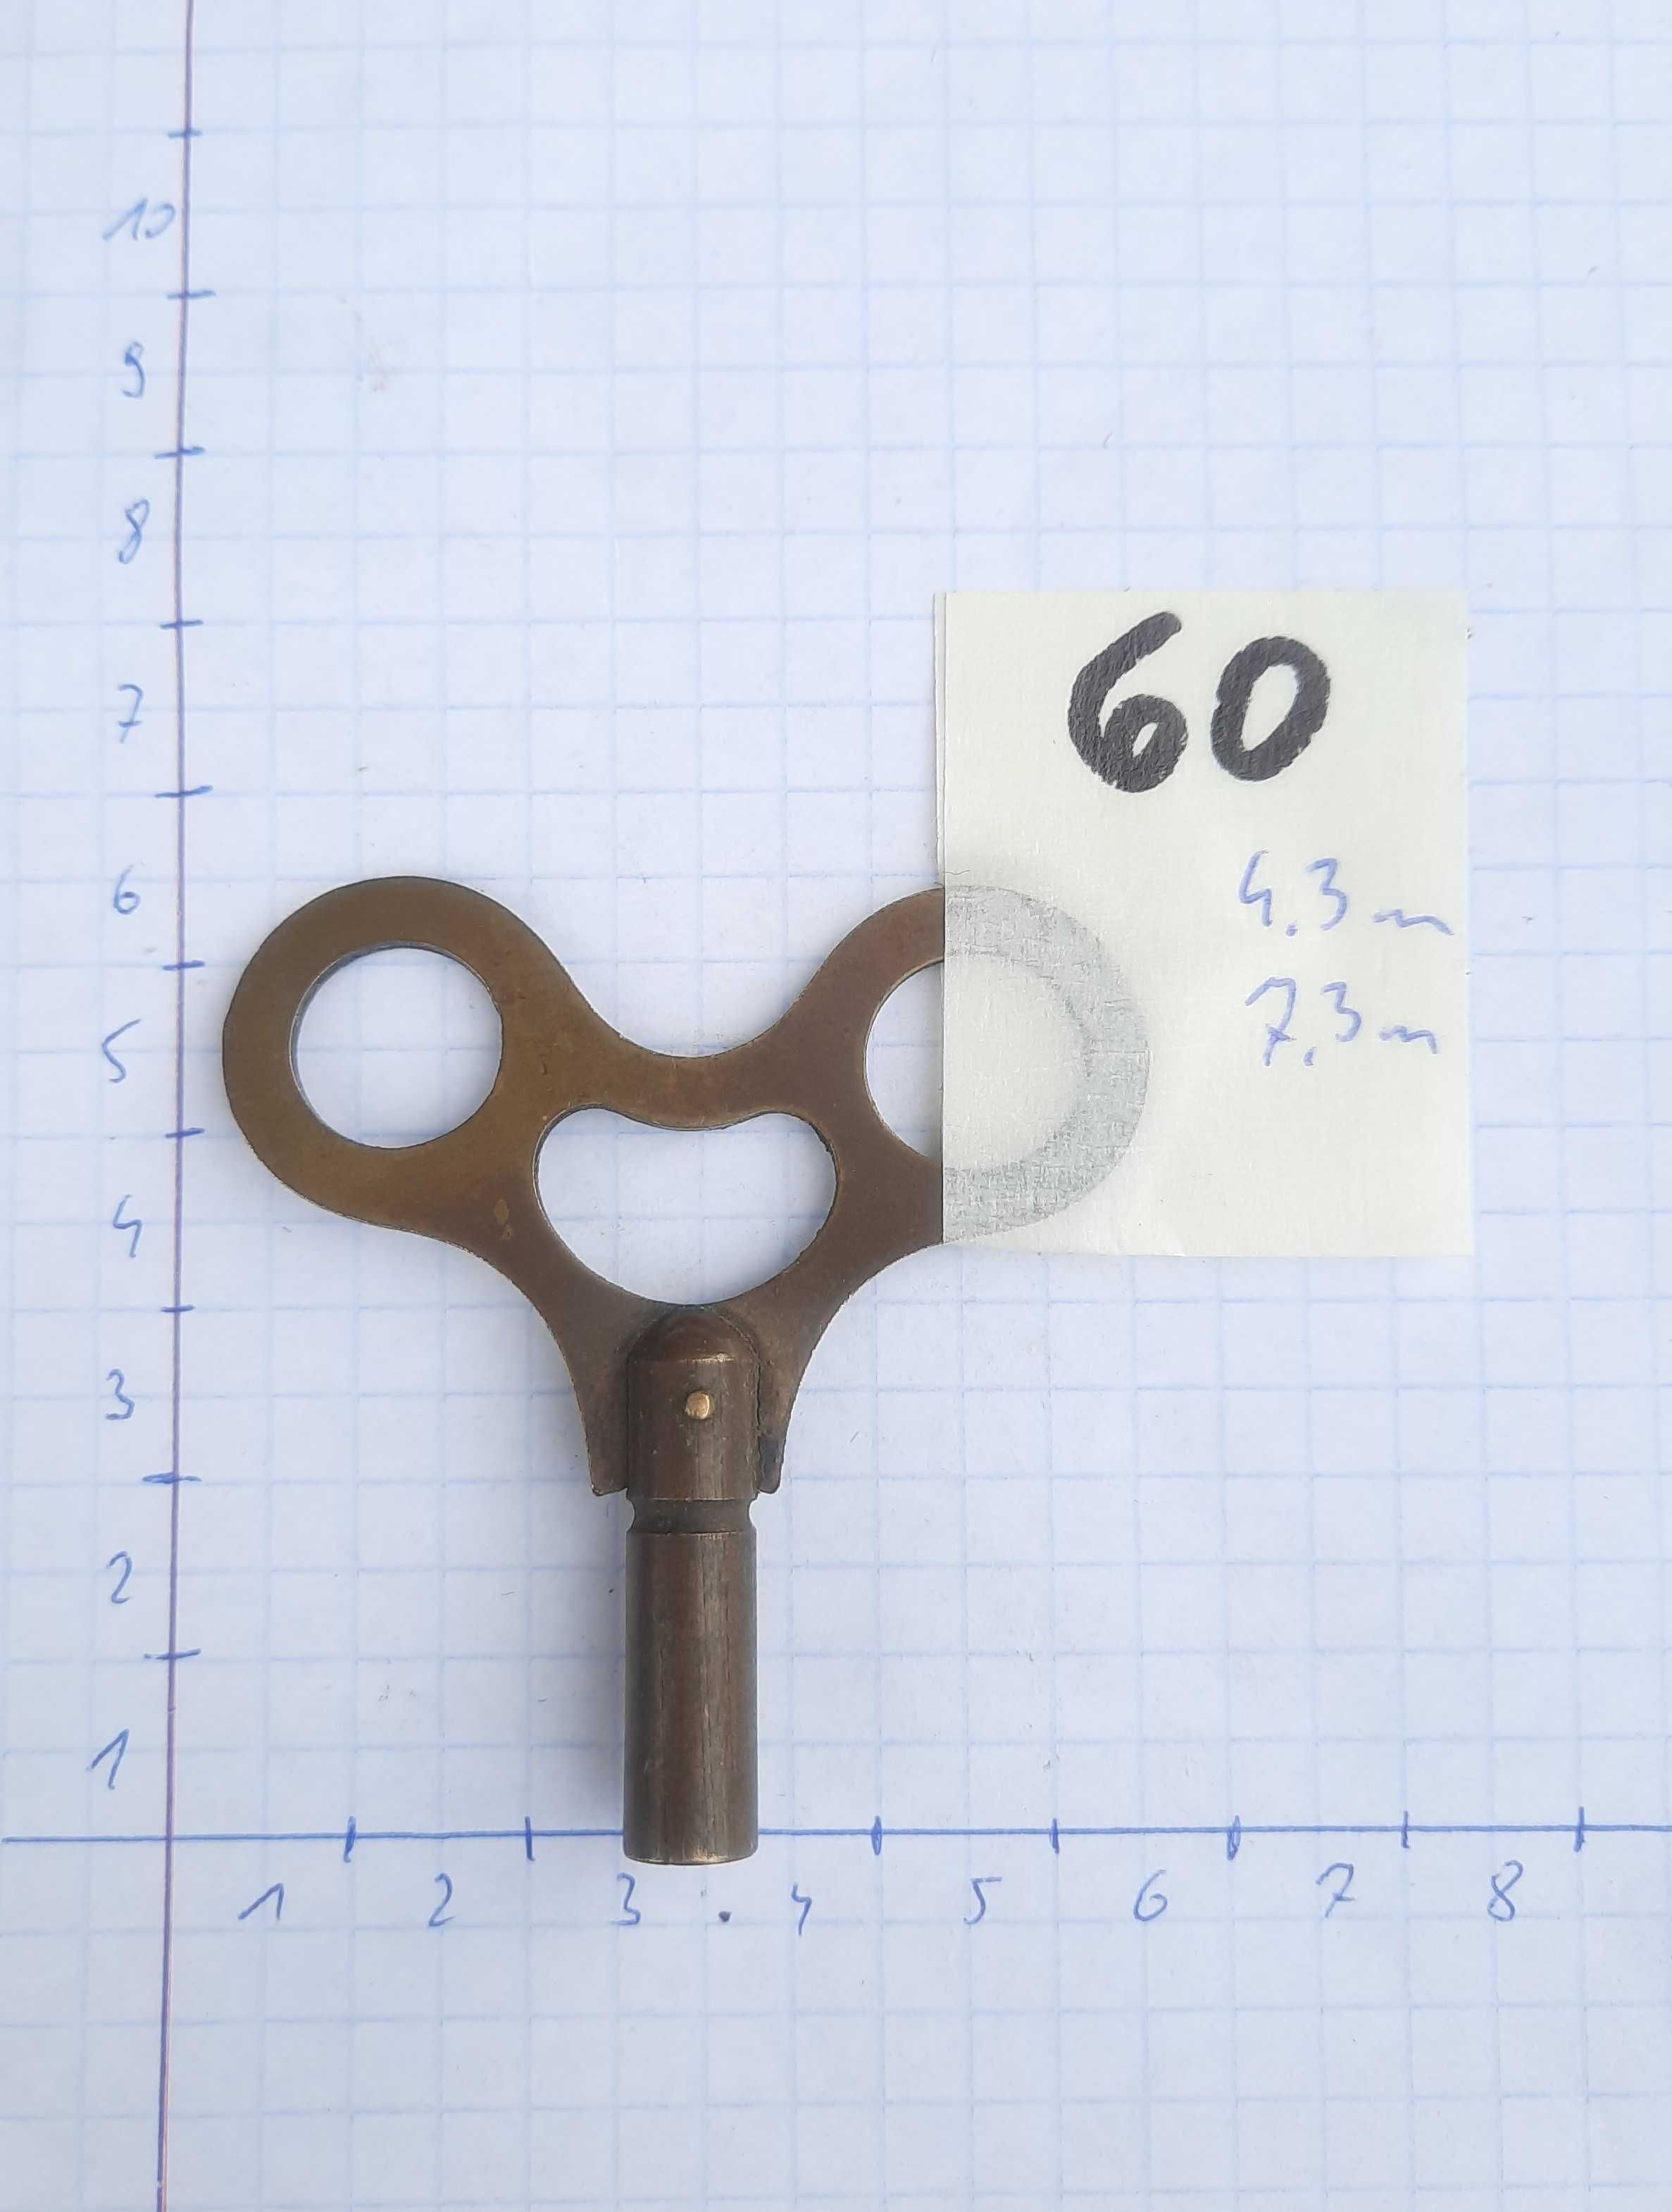 60 Stary klucz do nakręcania zegara 4,3mm